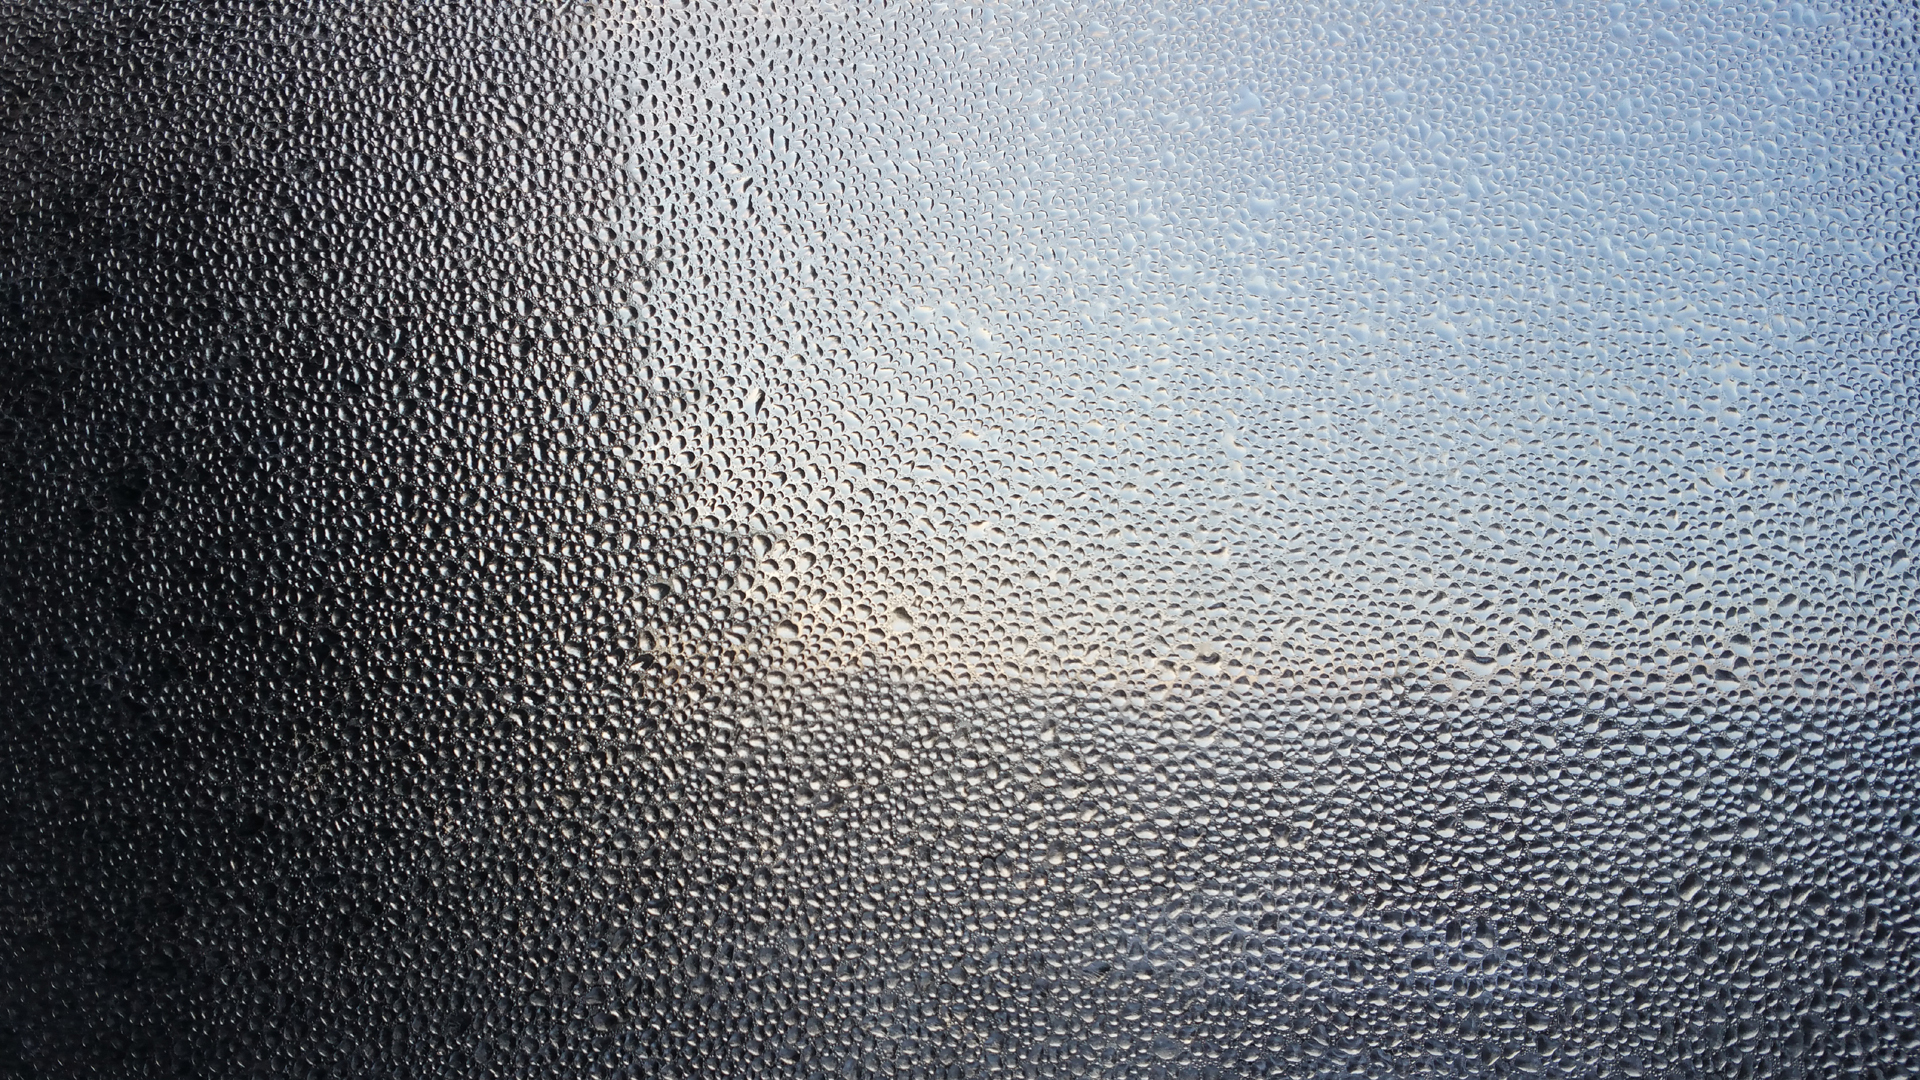 Fotostrecke Wasser 23: Kondenswasser am Fenster